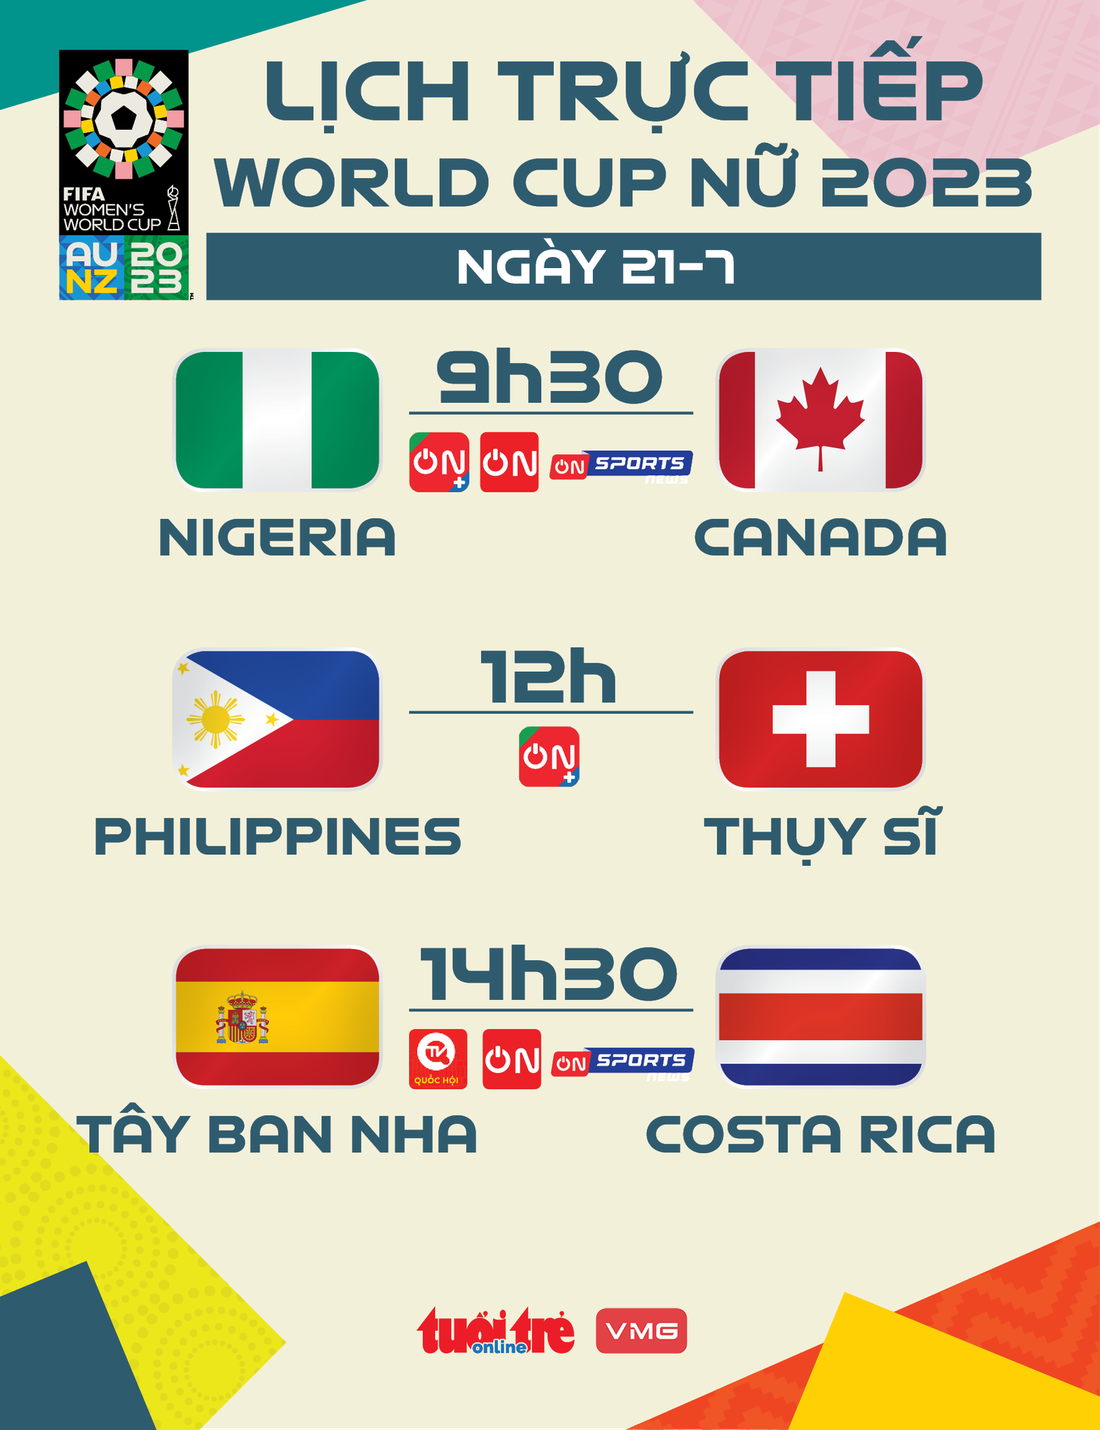 Lịch trực tiếp World Cup nữ 2023 ngày 21-7 - Đồ họa: AN BÌNH